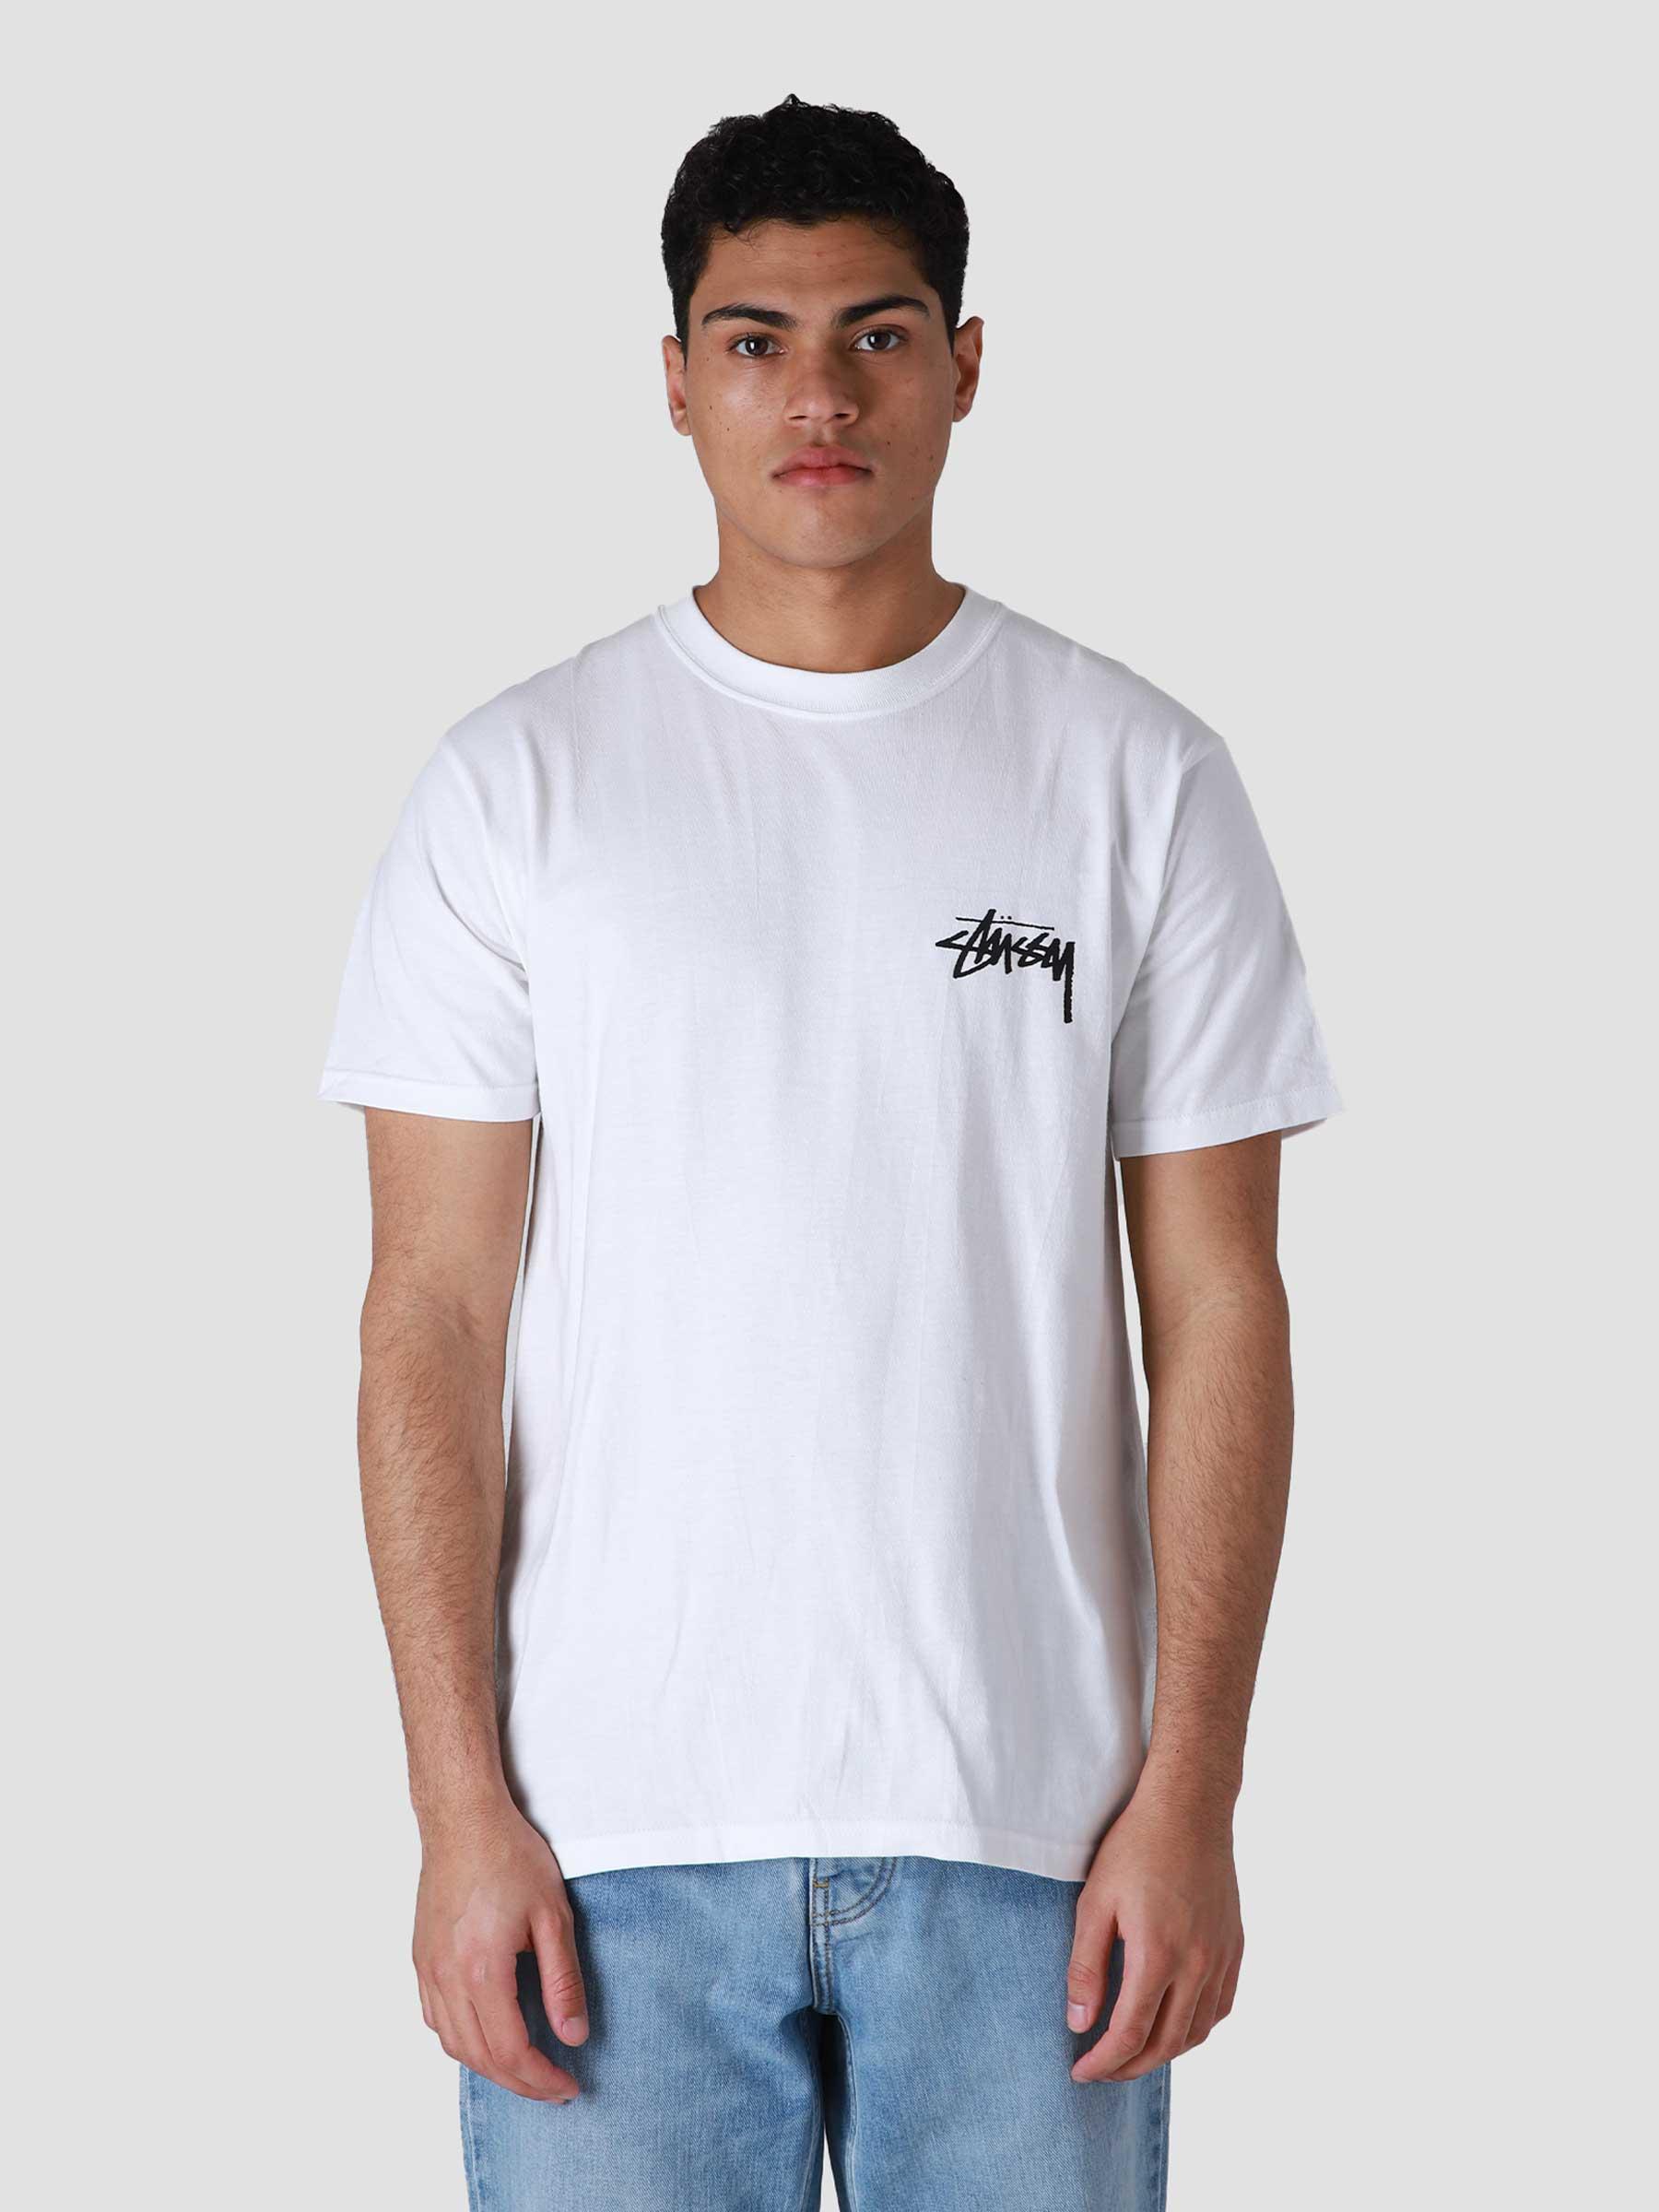 Stussy Fuzzy Dice T-Shirt White - Freshcotton